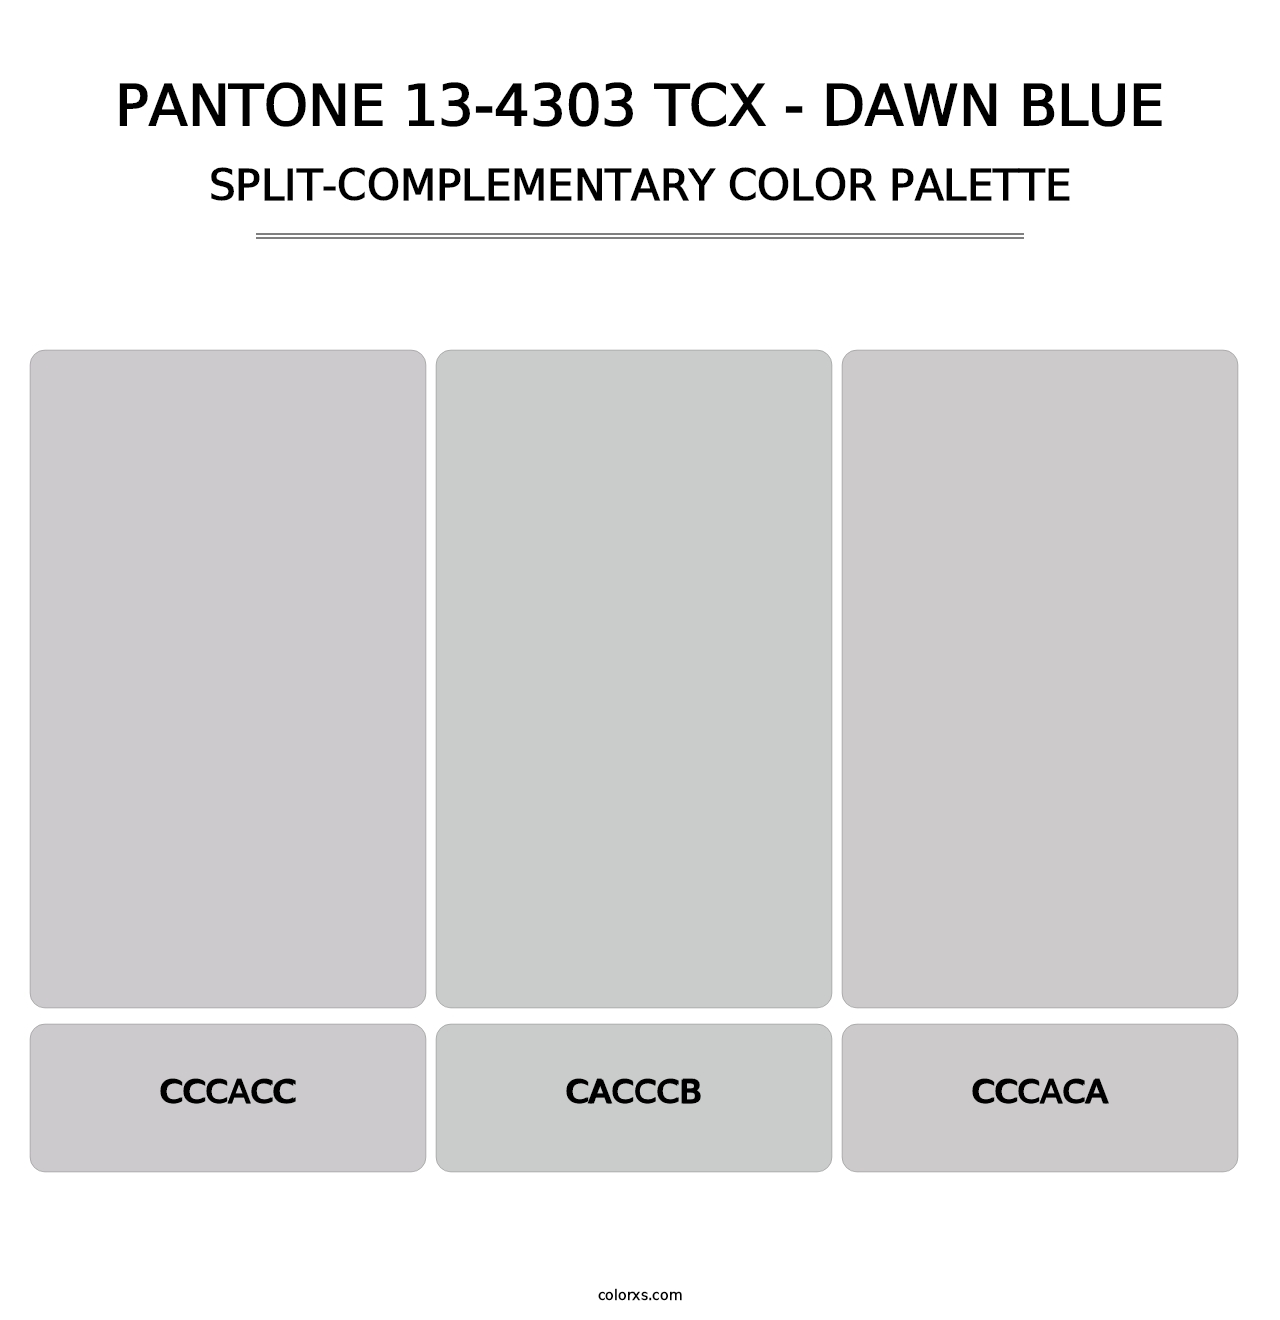 PANTONE 13-4303 TCX - Dawn Blue - Split-Complementary Color Palette